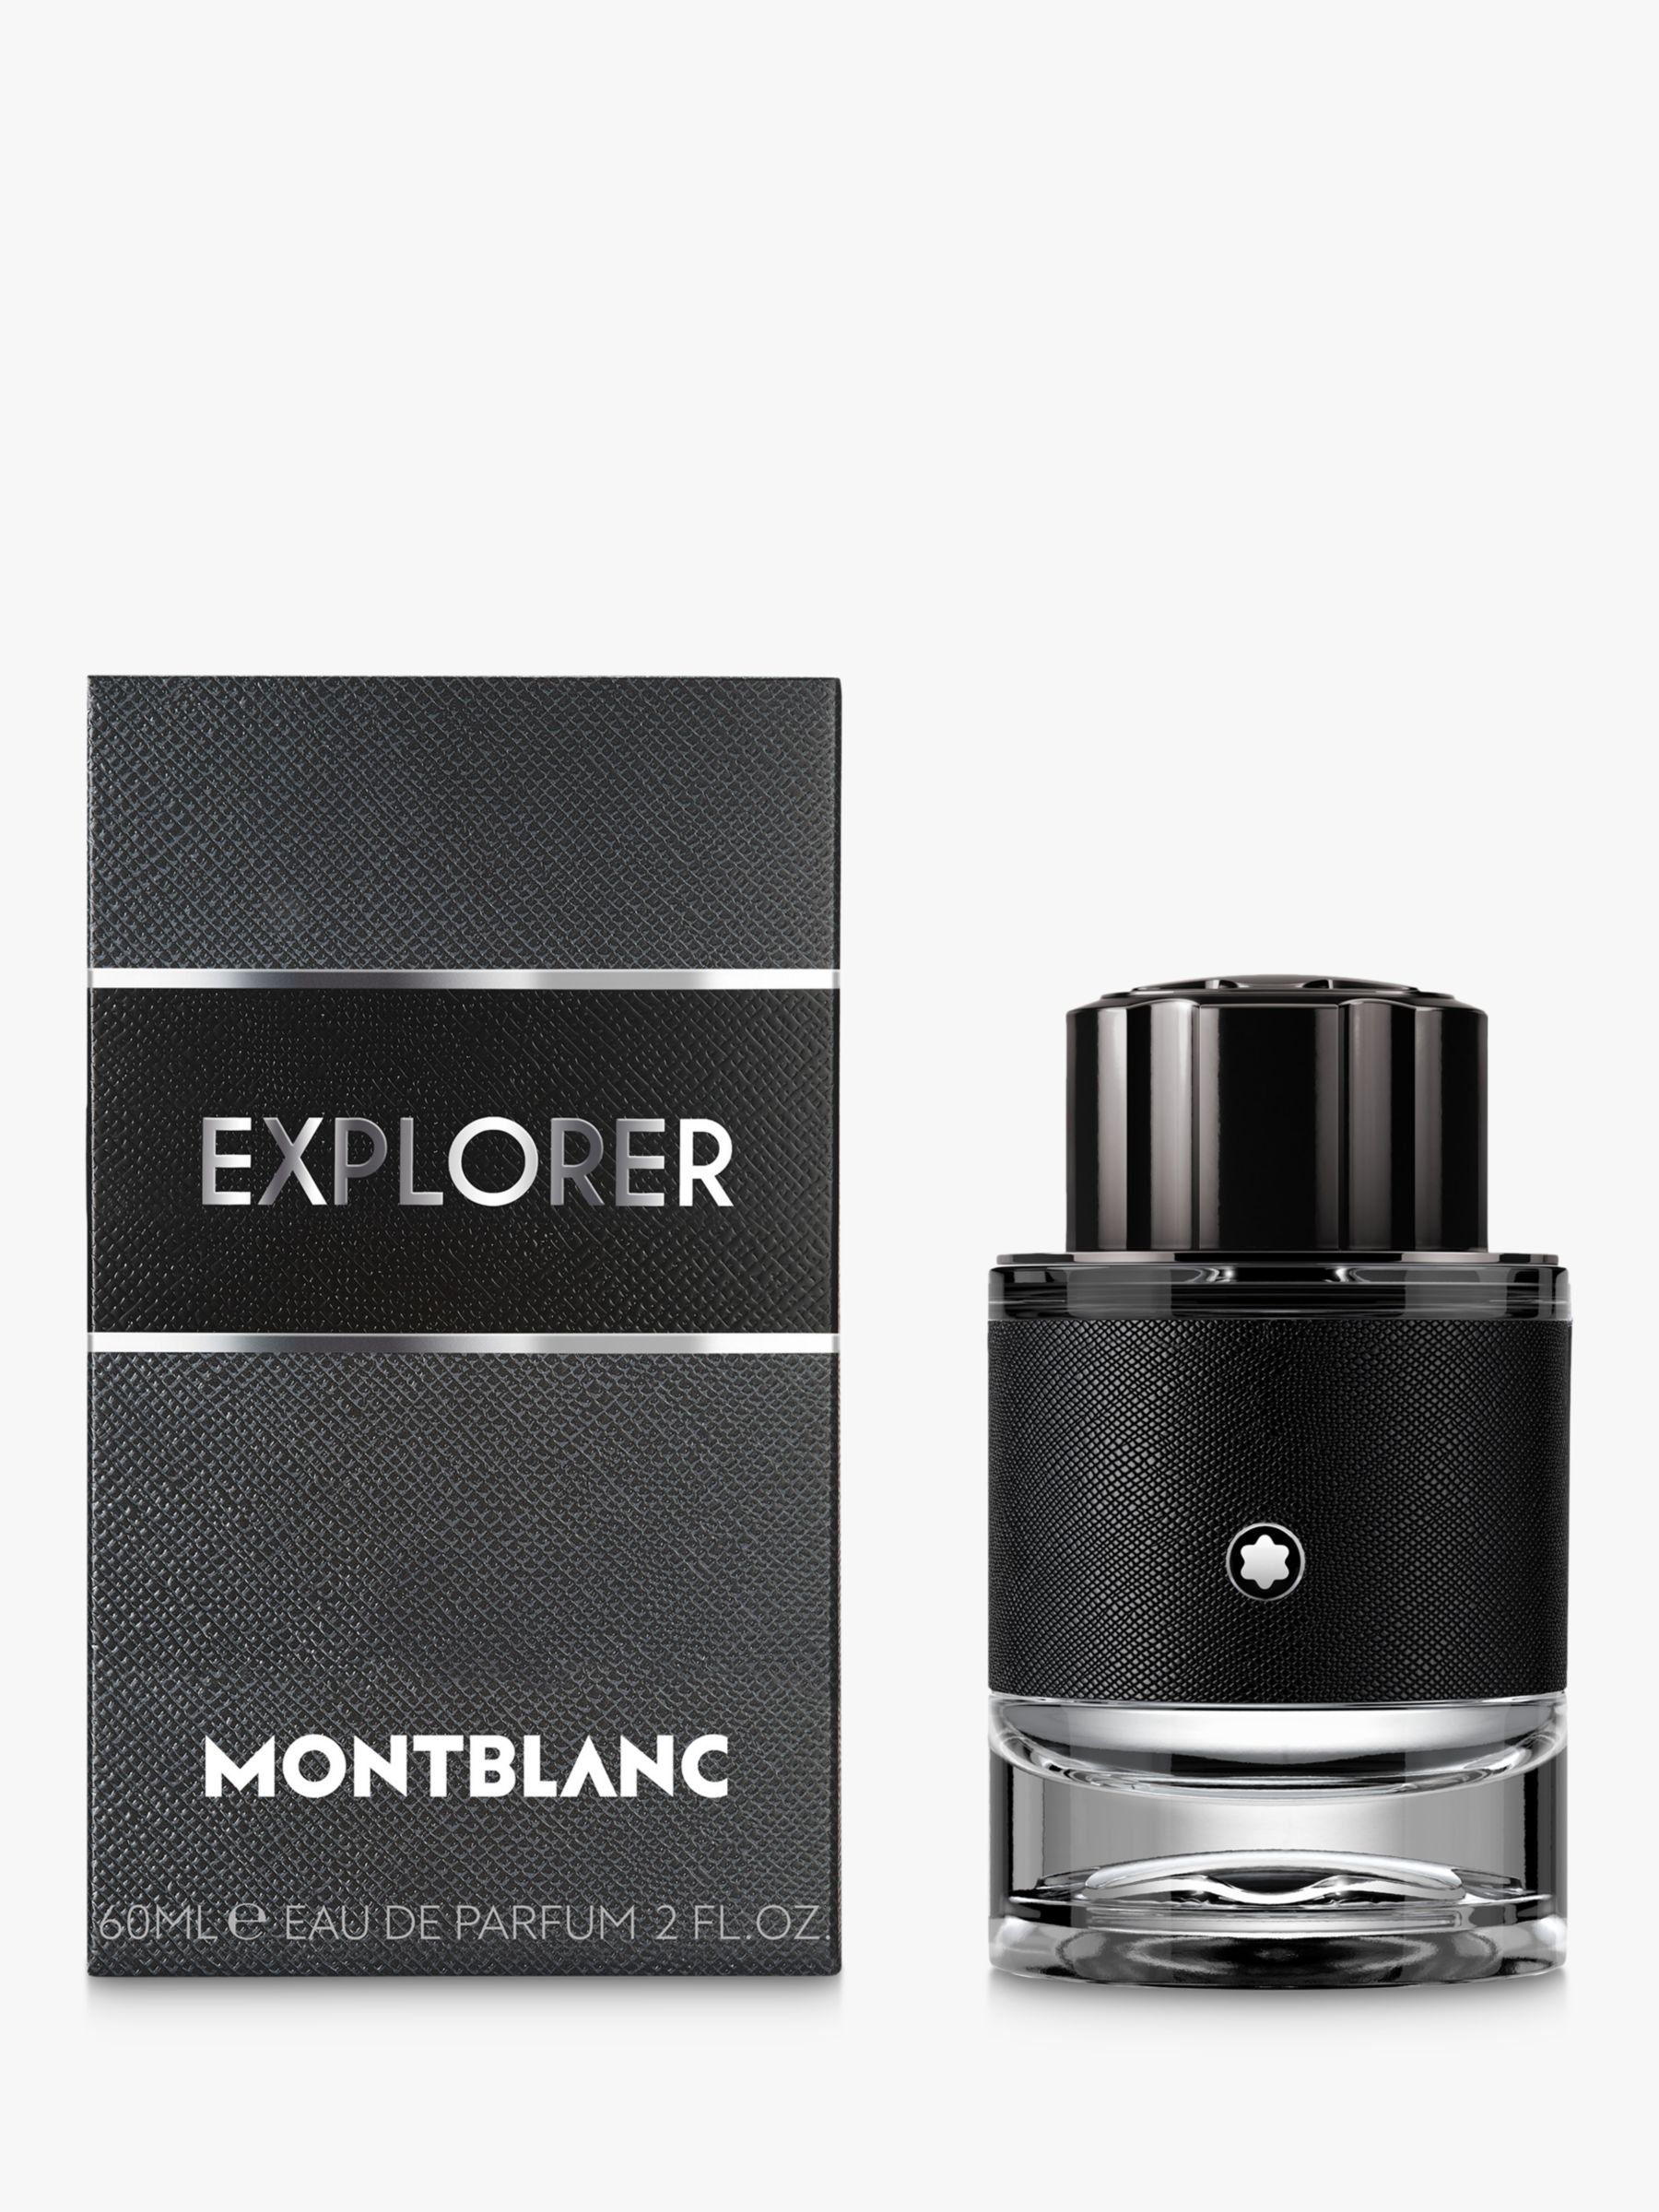 Montblanc Explorer Eau de Parfum, 60ml 2